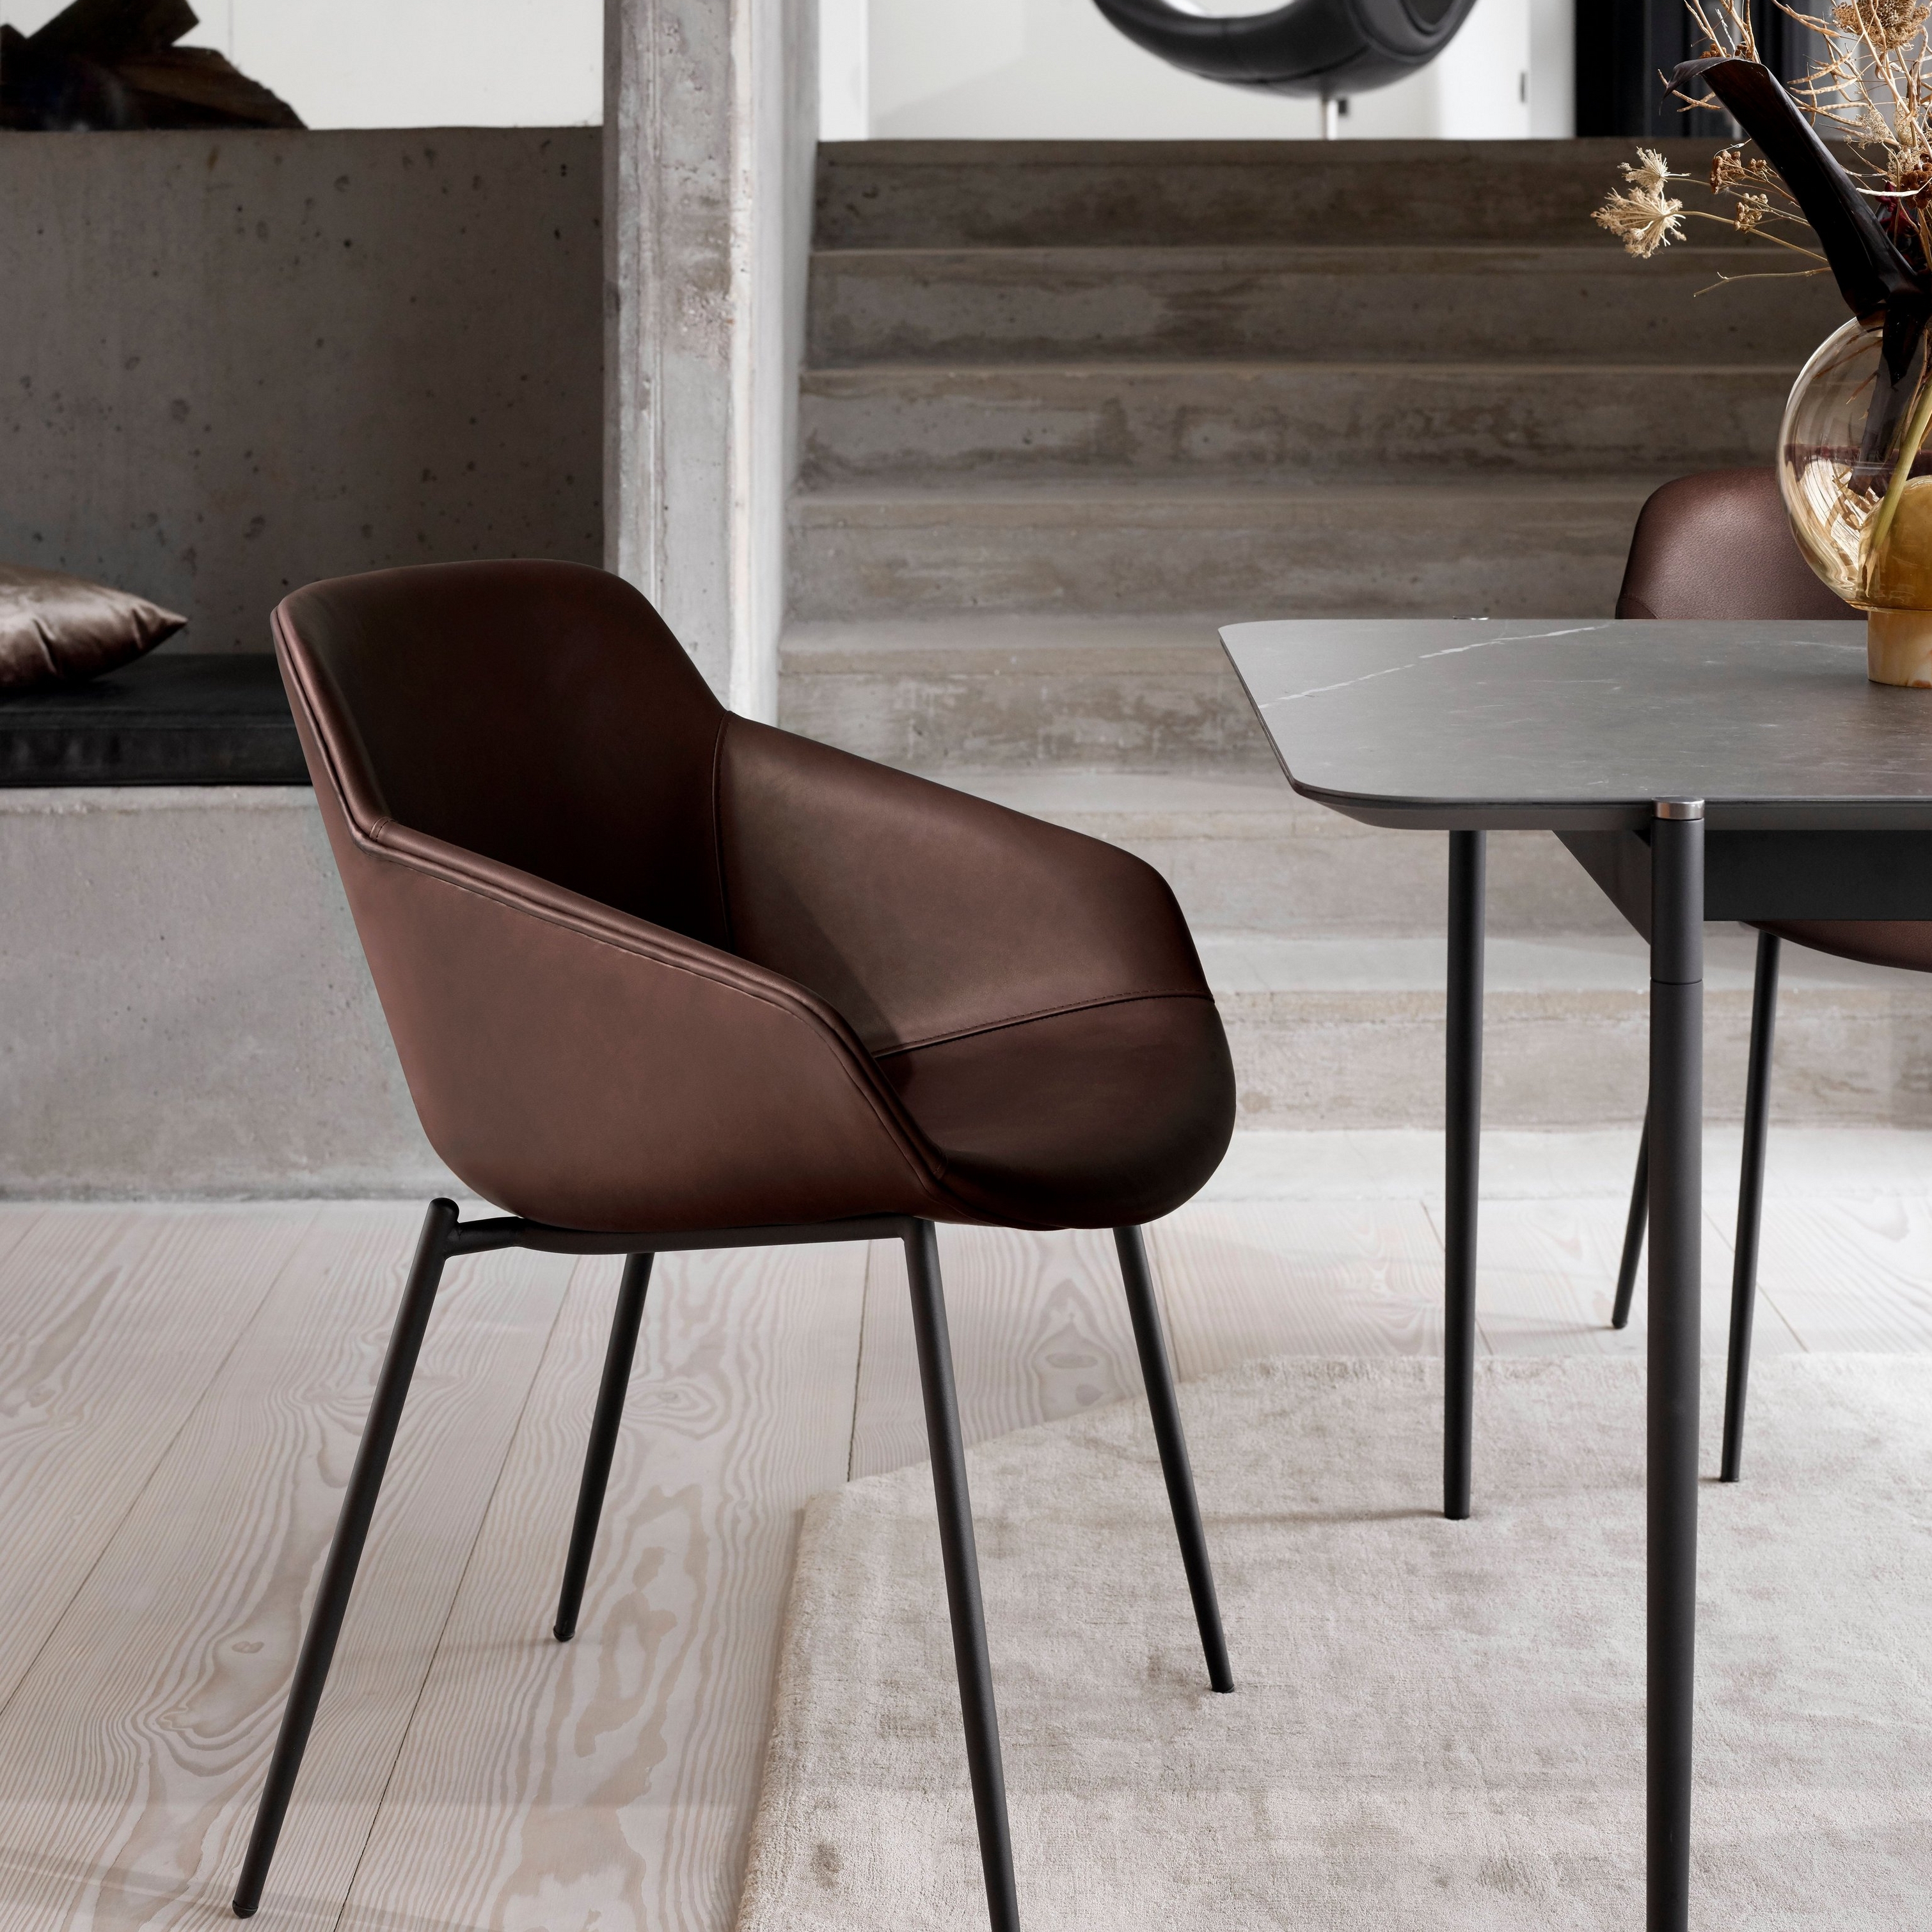 Matstol i läder med svarta ben, nära ett bord med vas på, i modern miljö.